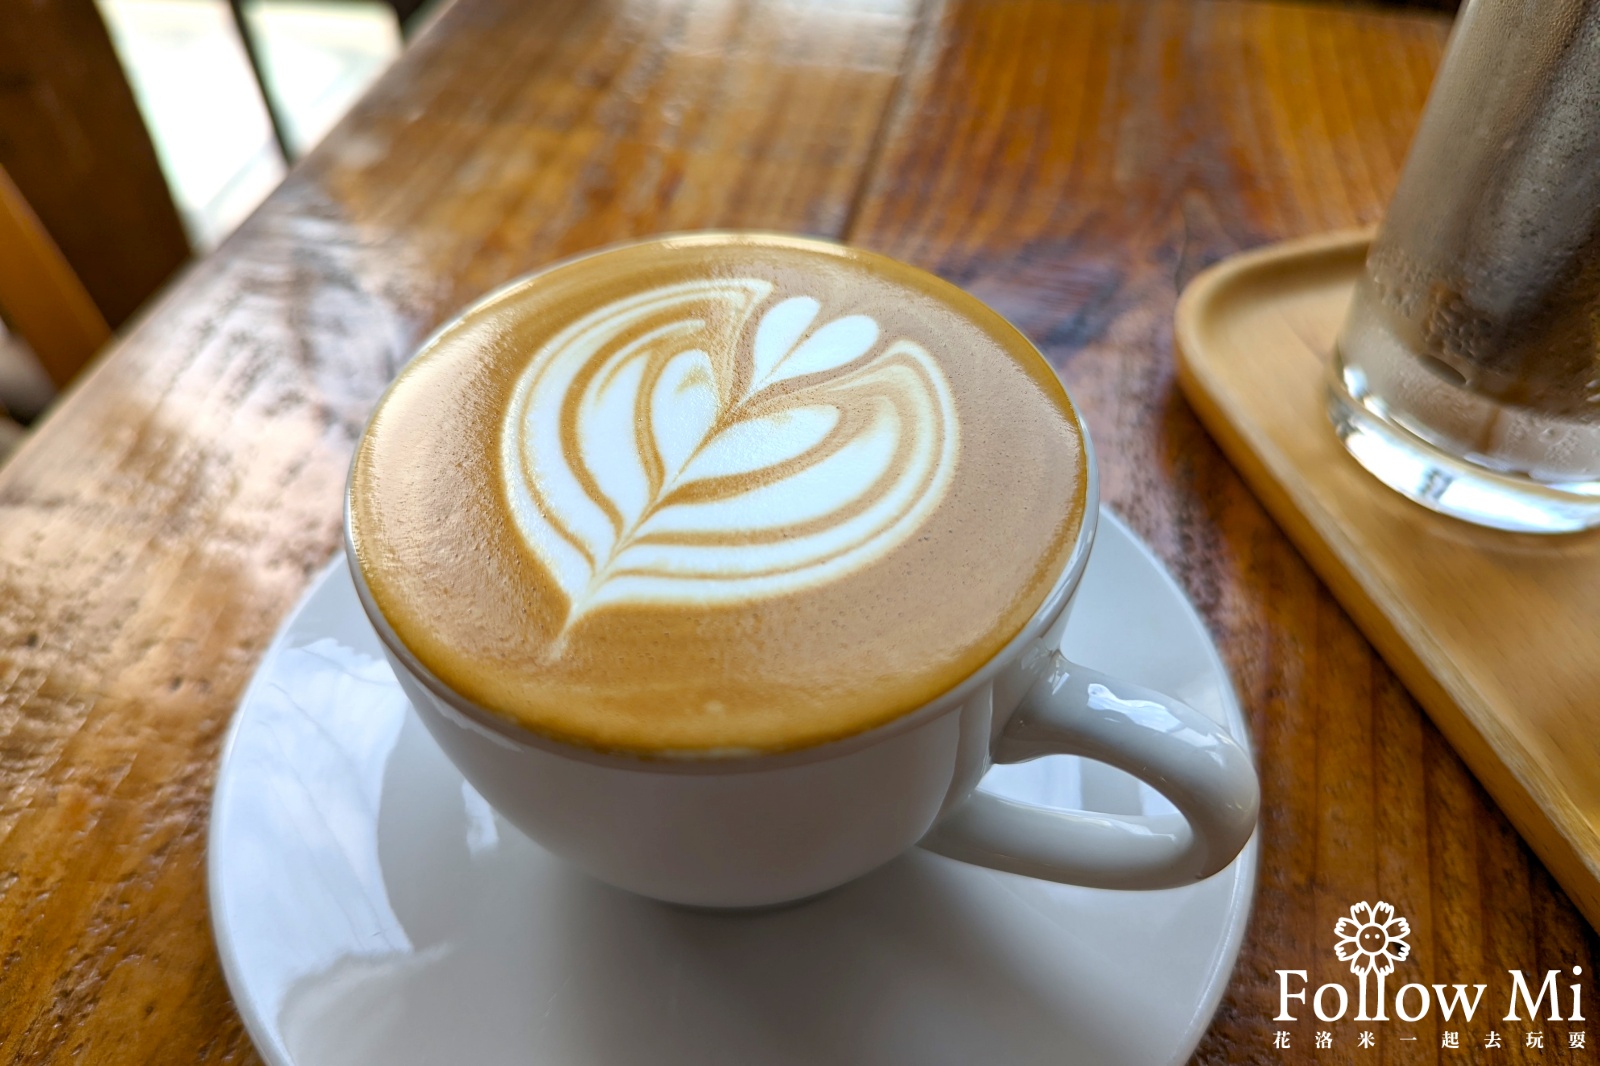 lili koko coffee,台北美食,士林區,社子島